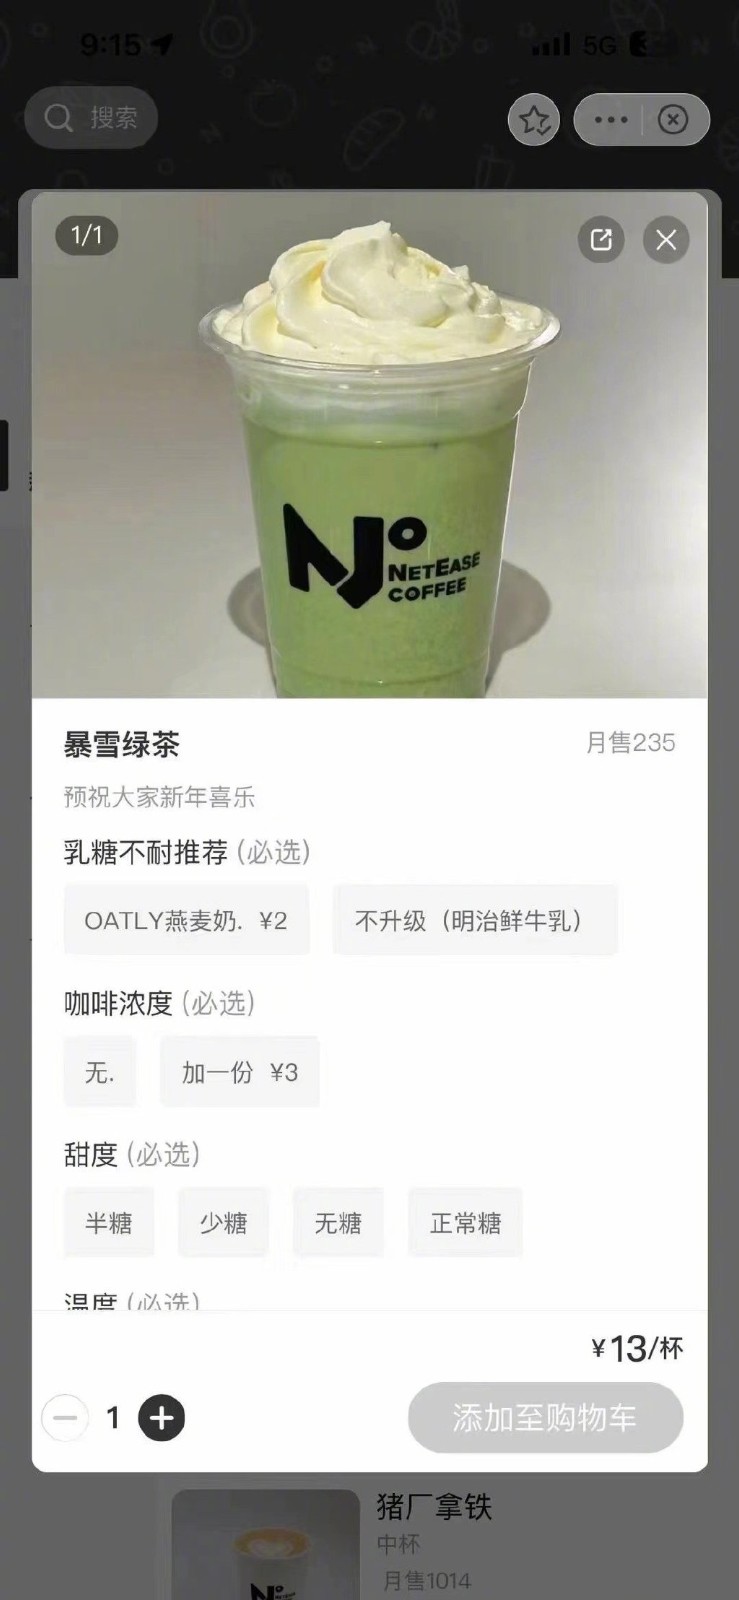 网传网易咖啡厅推出“暴雪绿茶”饮品 订单火爆已售罄 二次世界 第3张